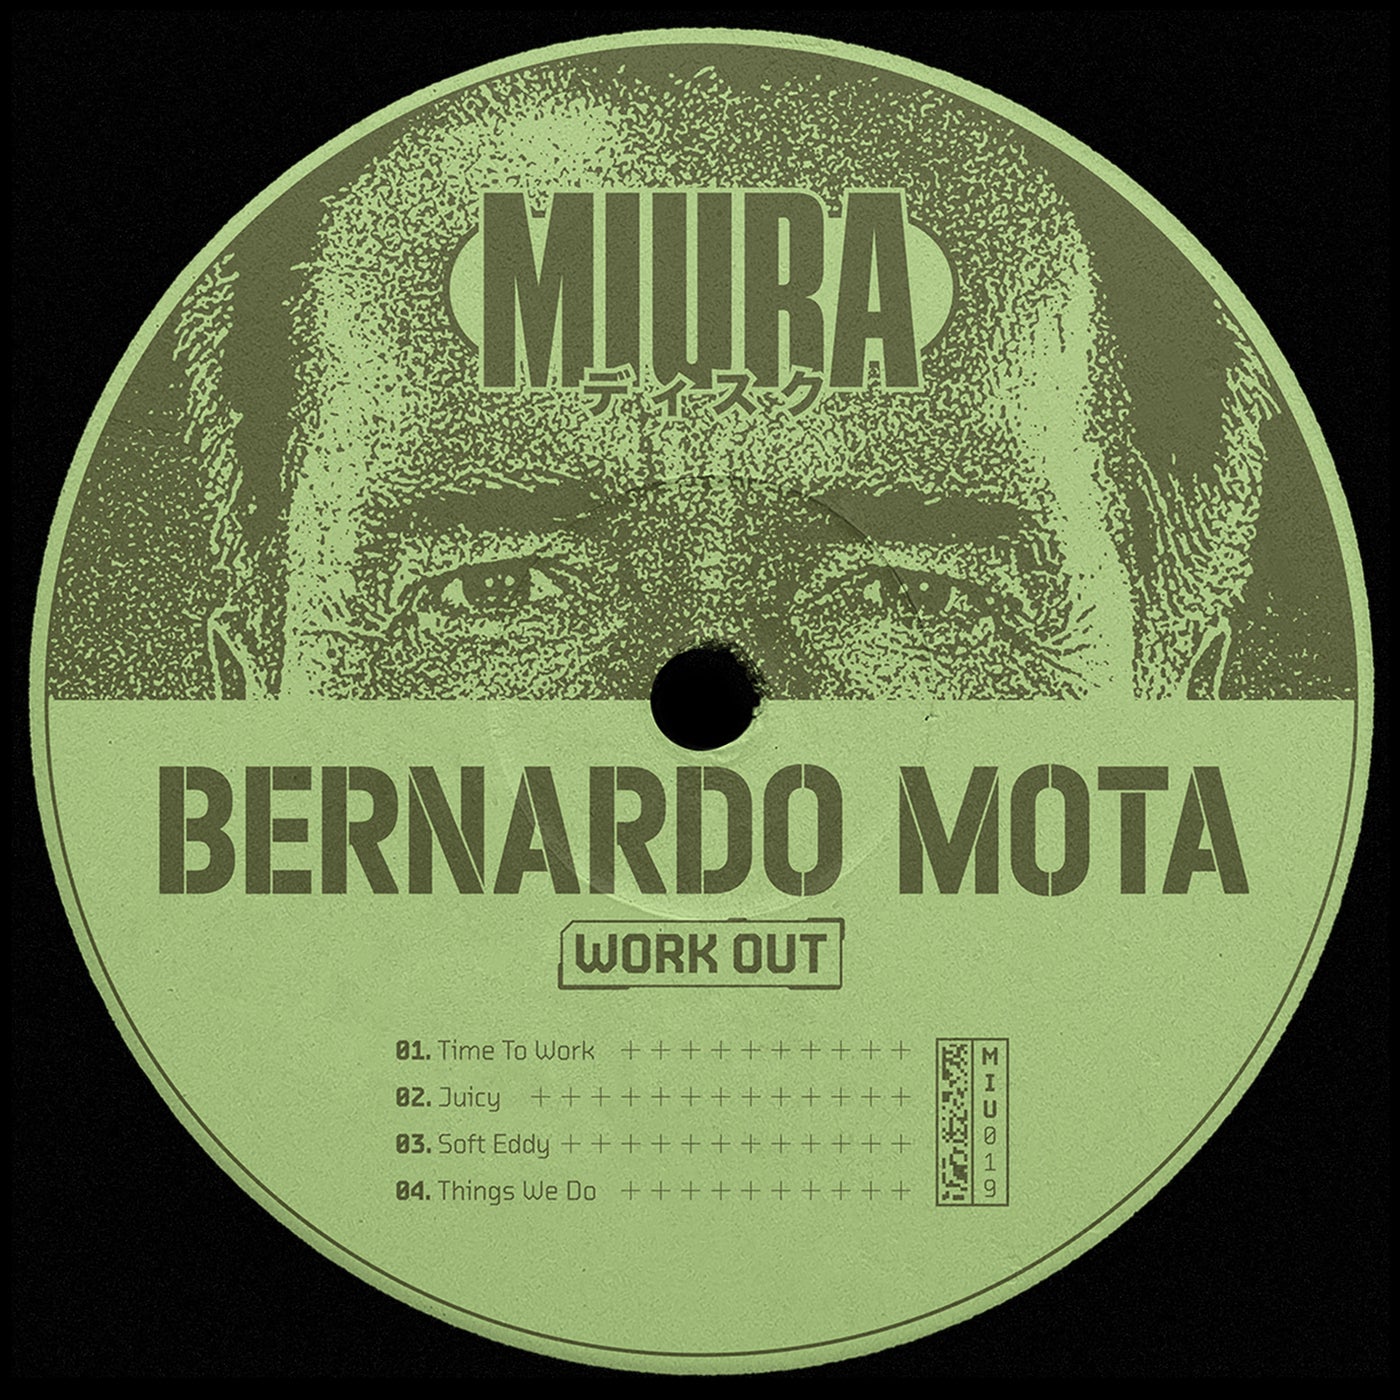 Bernardo Mota - Work out [MIU019]